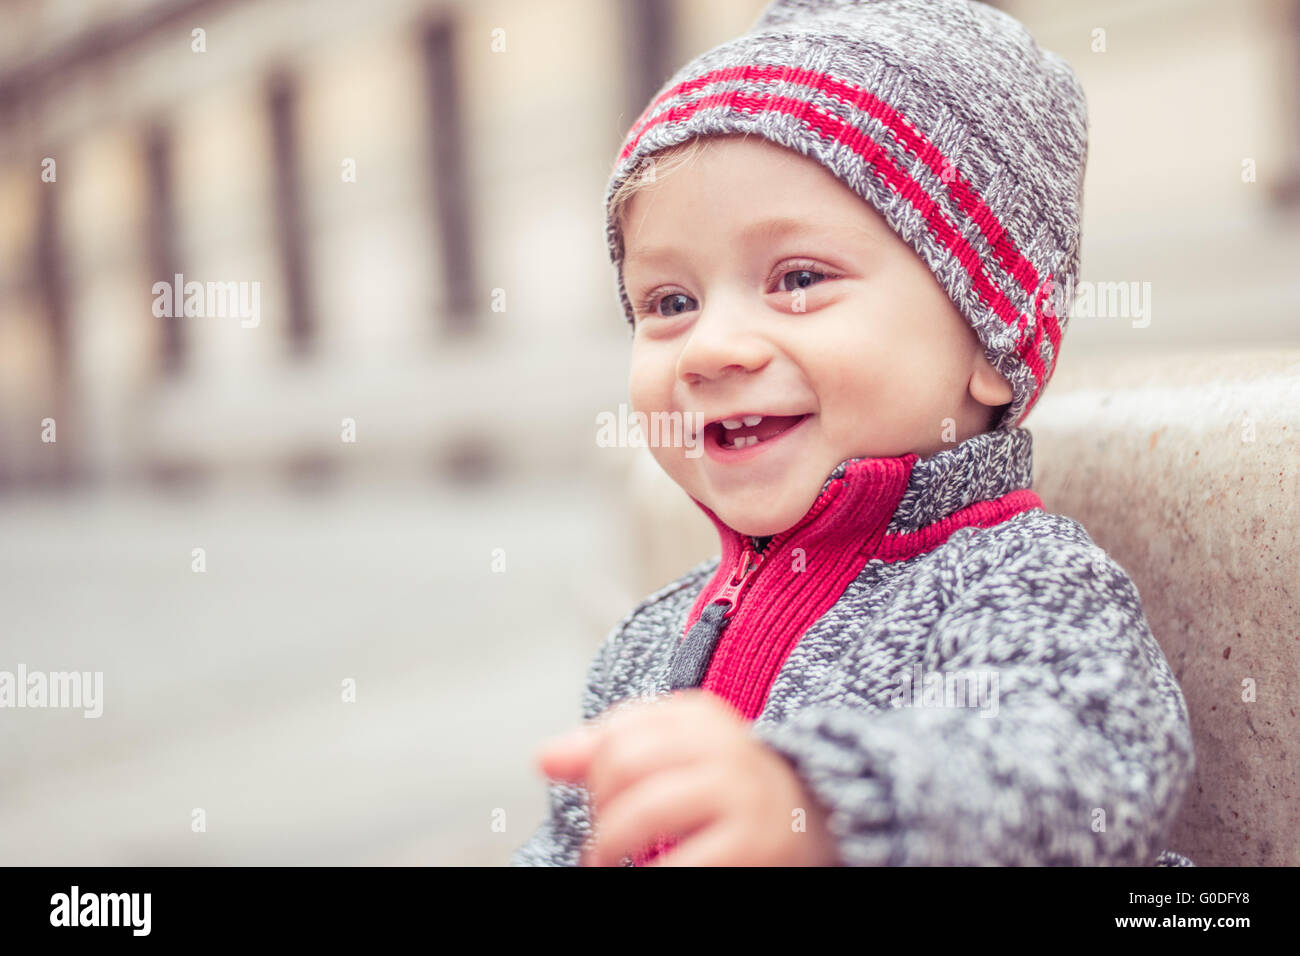 happy little baby boy wearing hat Stock Photo